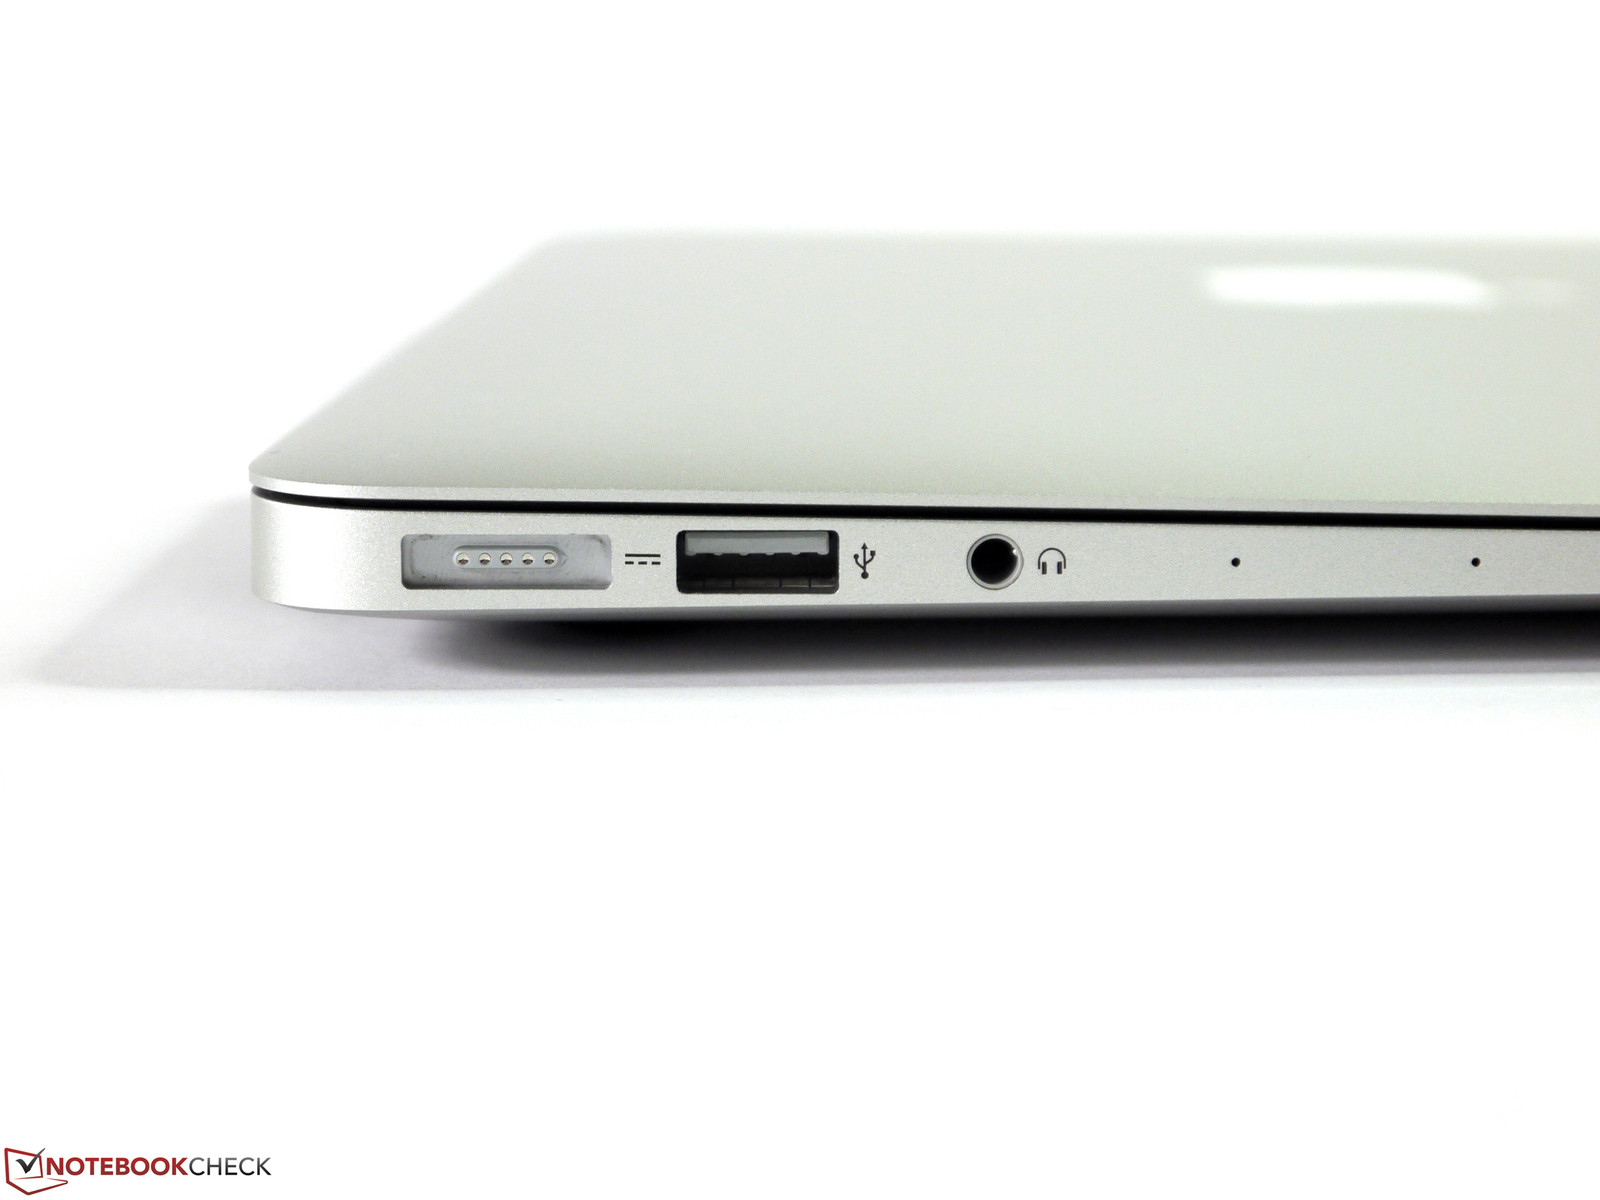 binde Humanistisk pølse Apple MacBook Air 13 (2015) Notebook Review - NotebookCheck.net Reviews